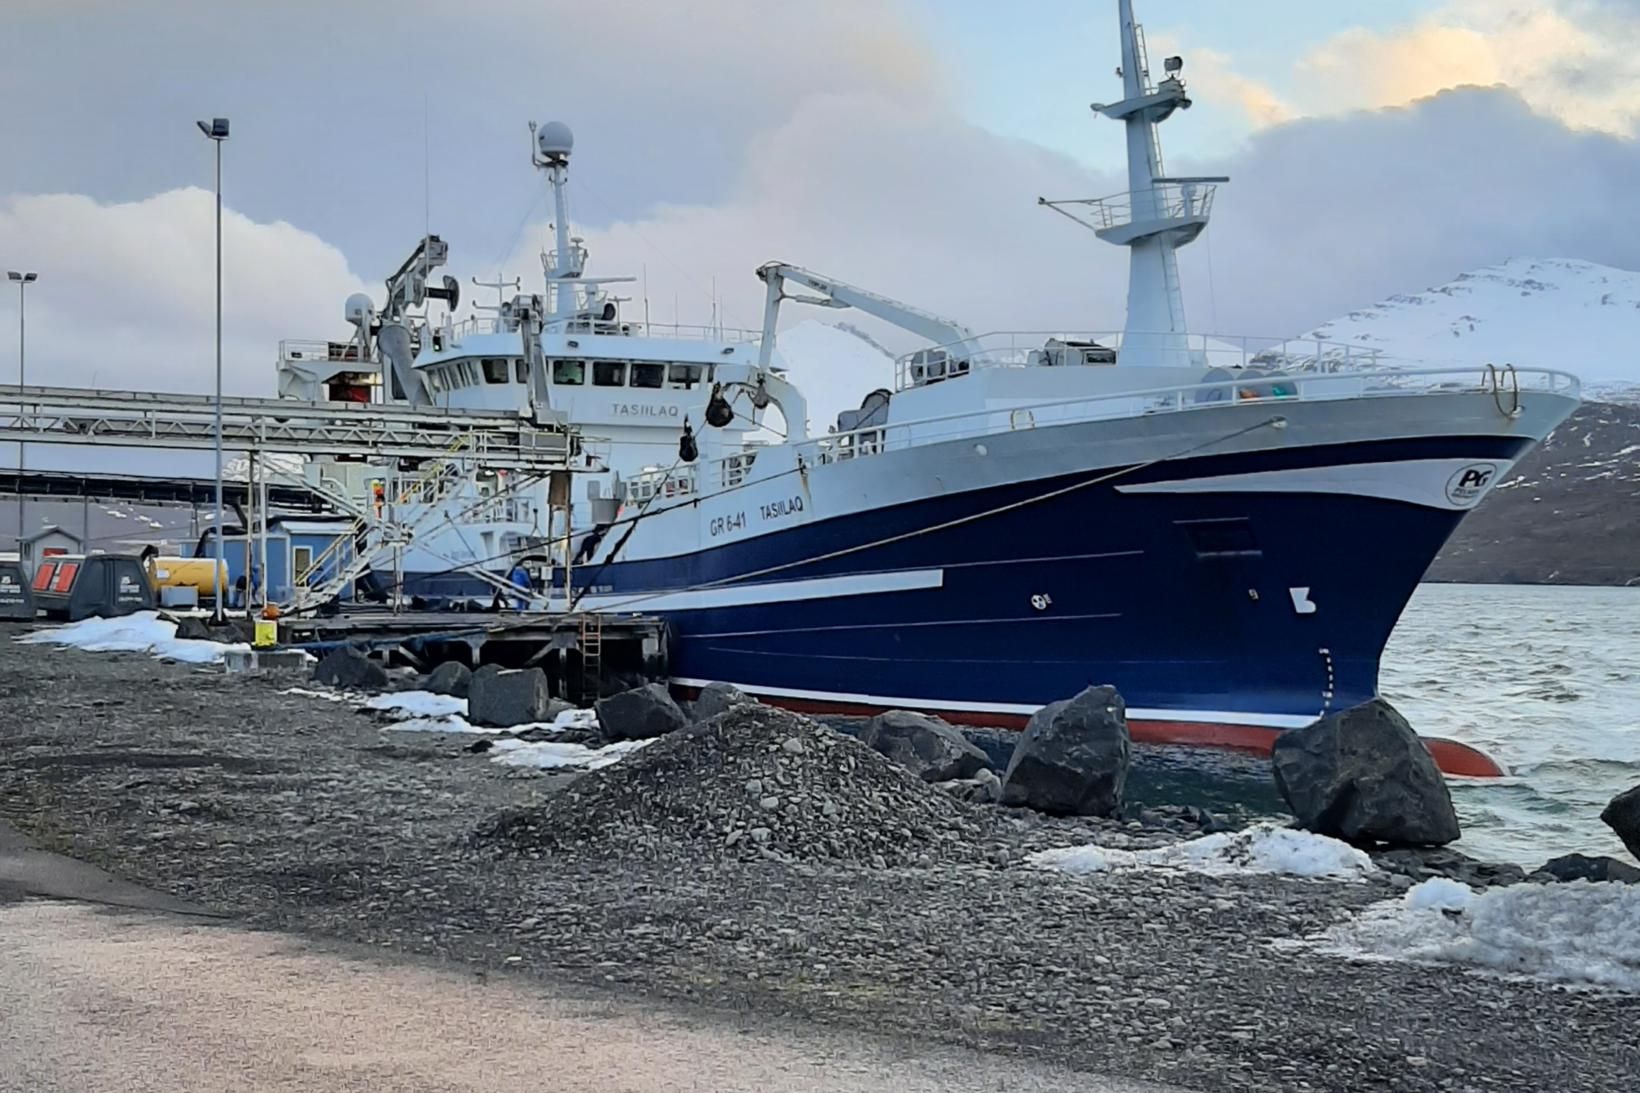 Tasillaq landaði 500 tonnum af loðnu á Fáskrúðsfirði í dag.